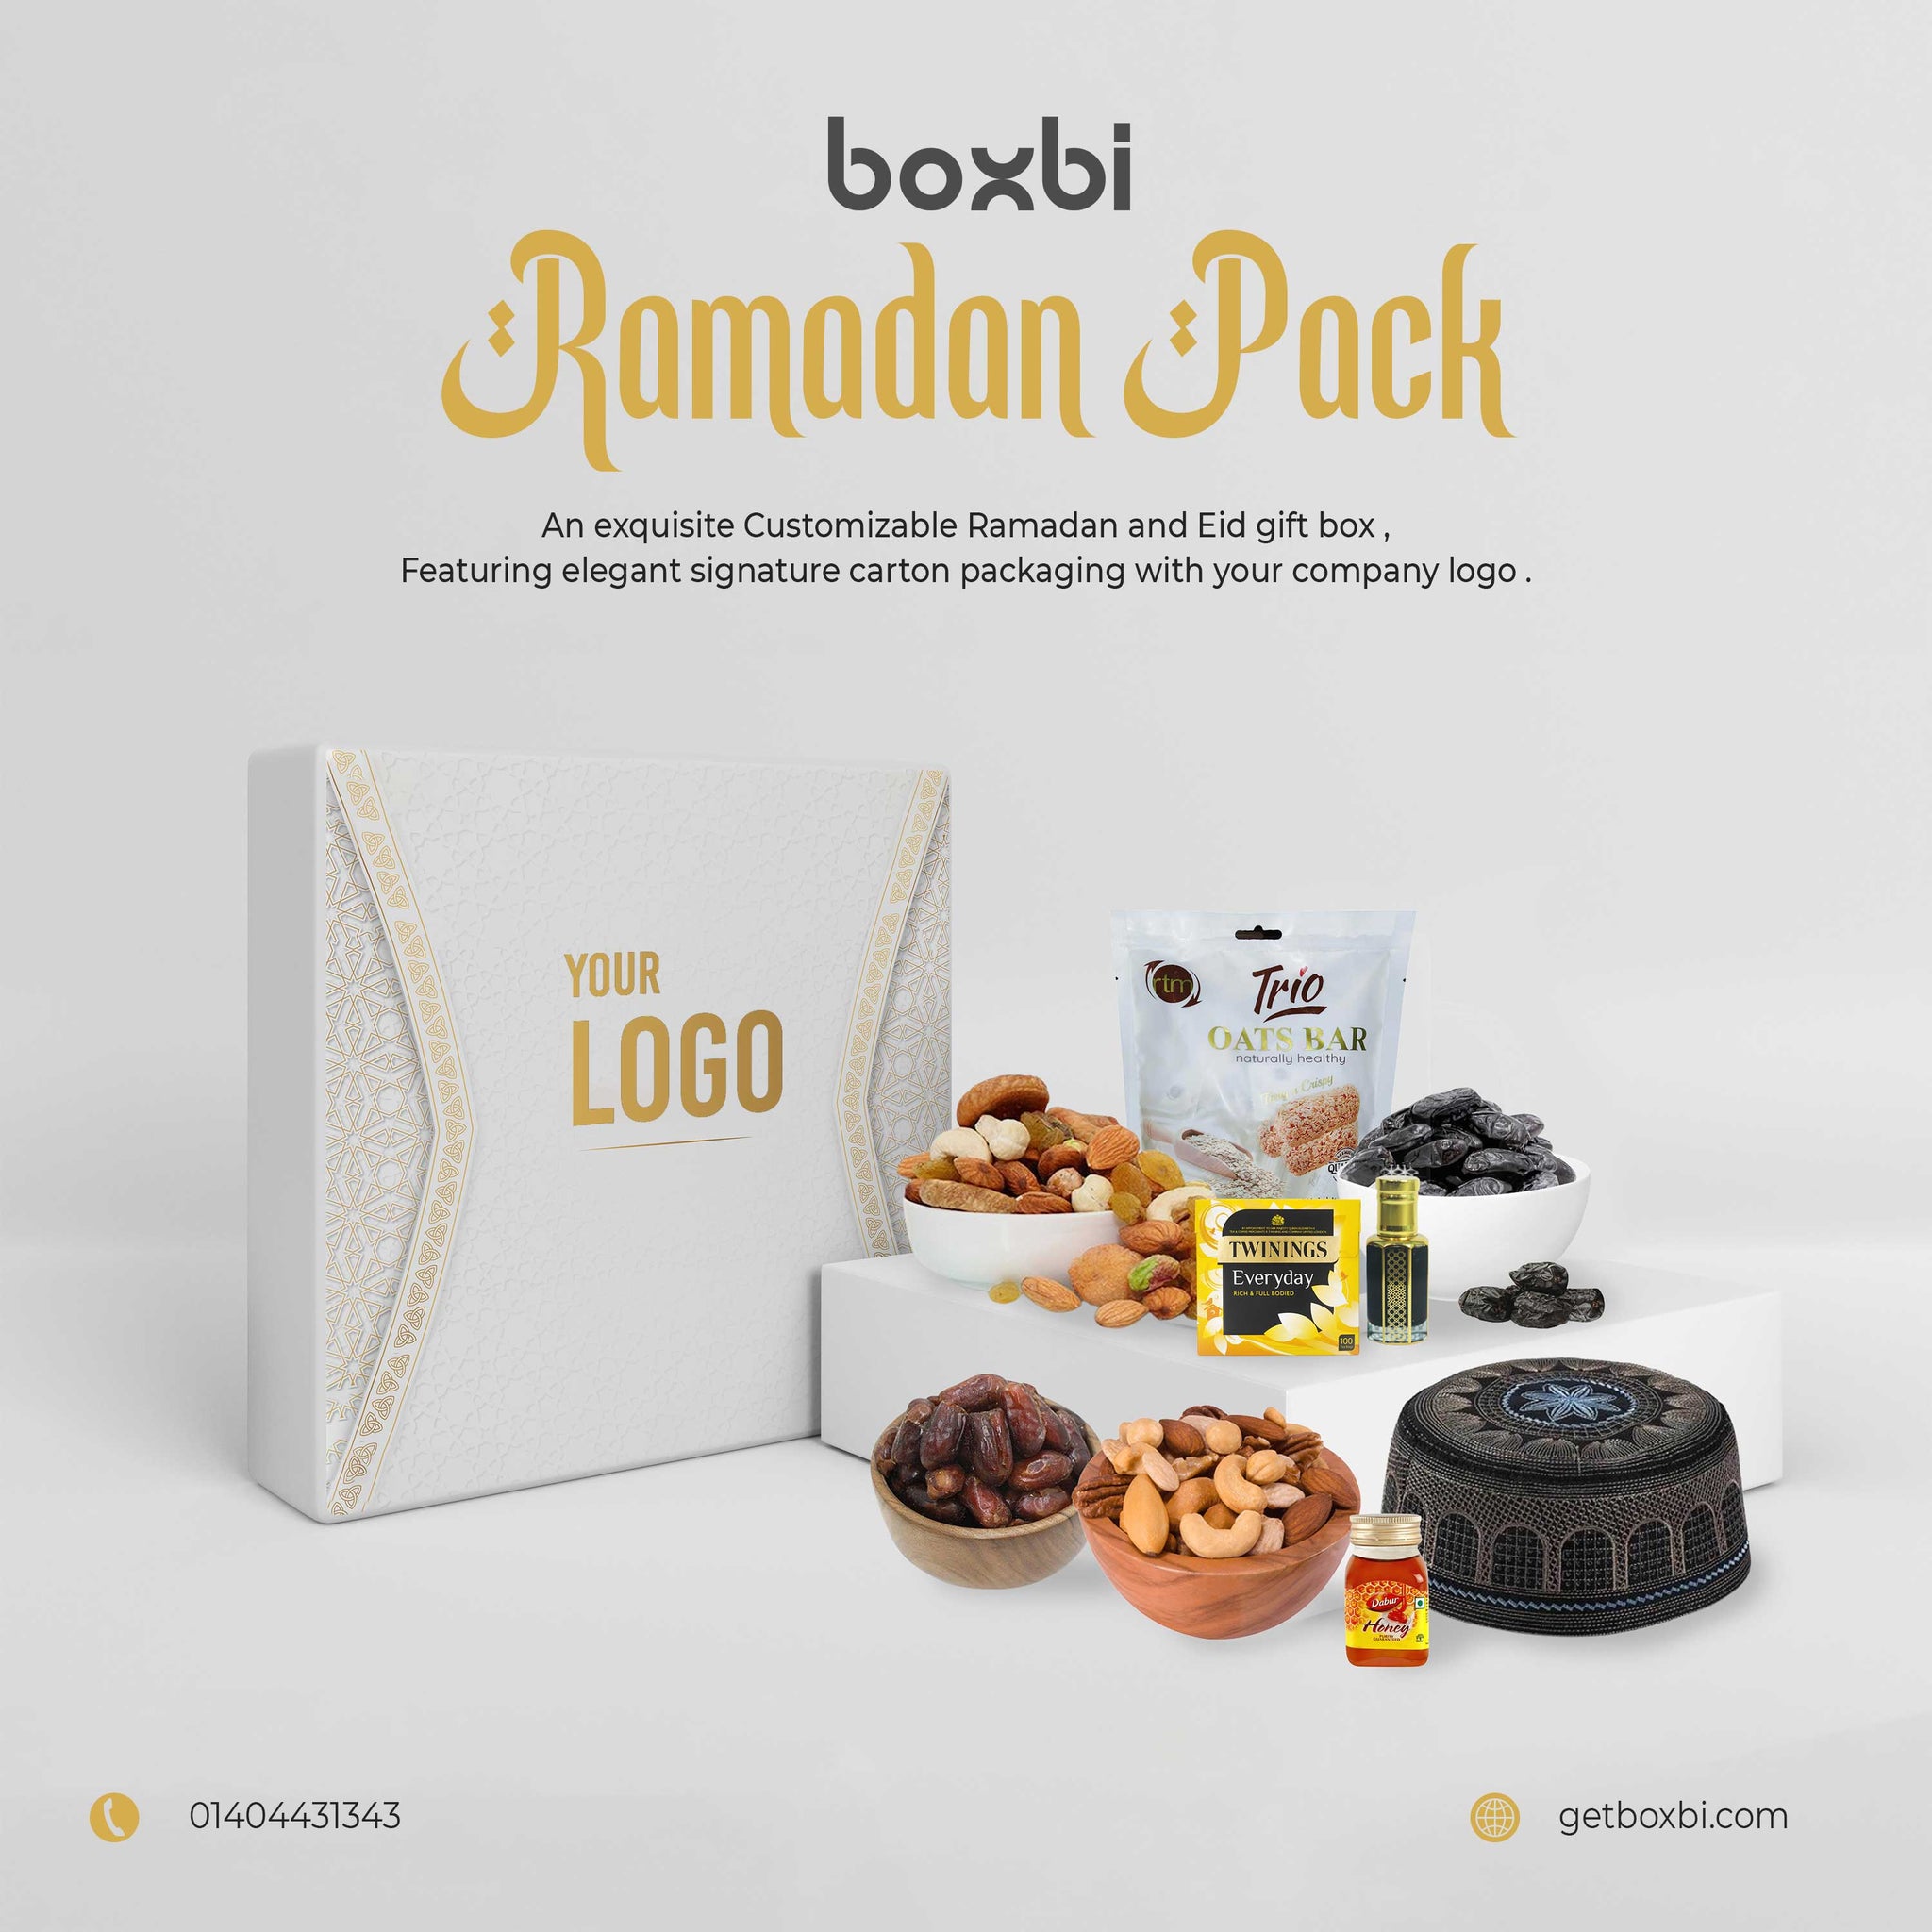 Ramadan Box - Delights